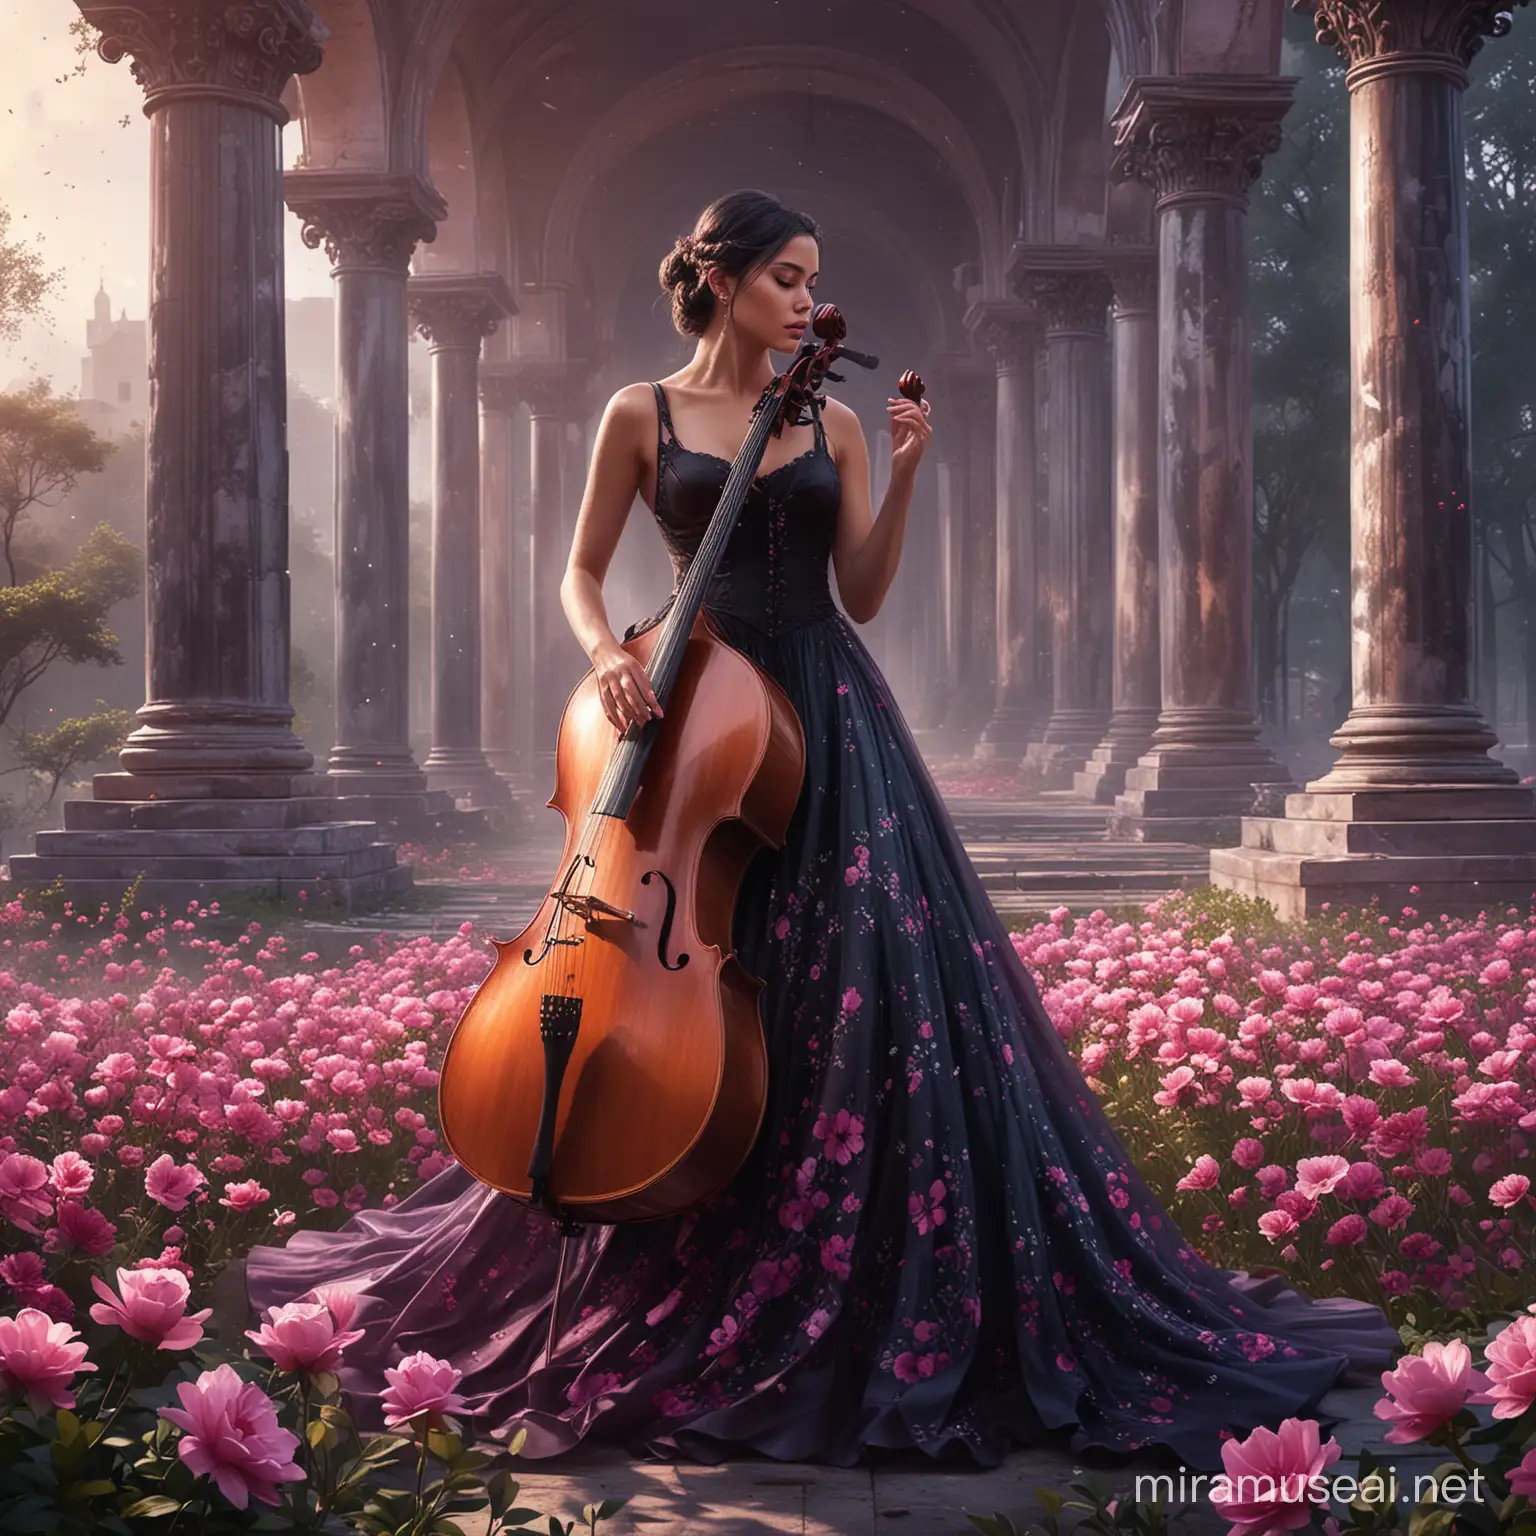 Elegant Cellist in a Fantasy Garden